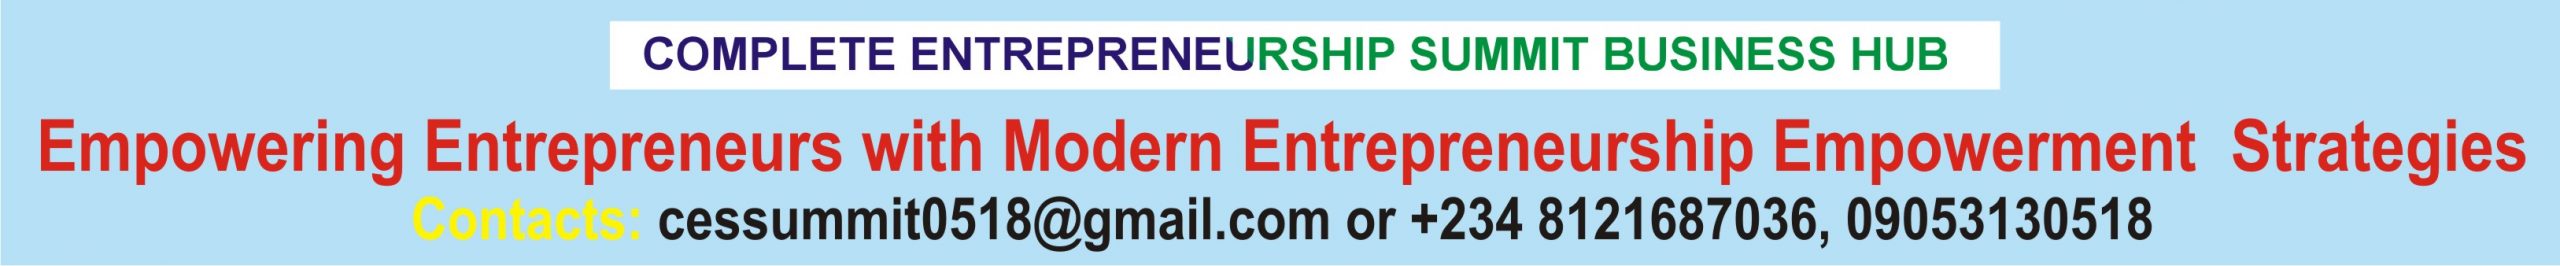 Complete Entrepreneurship